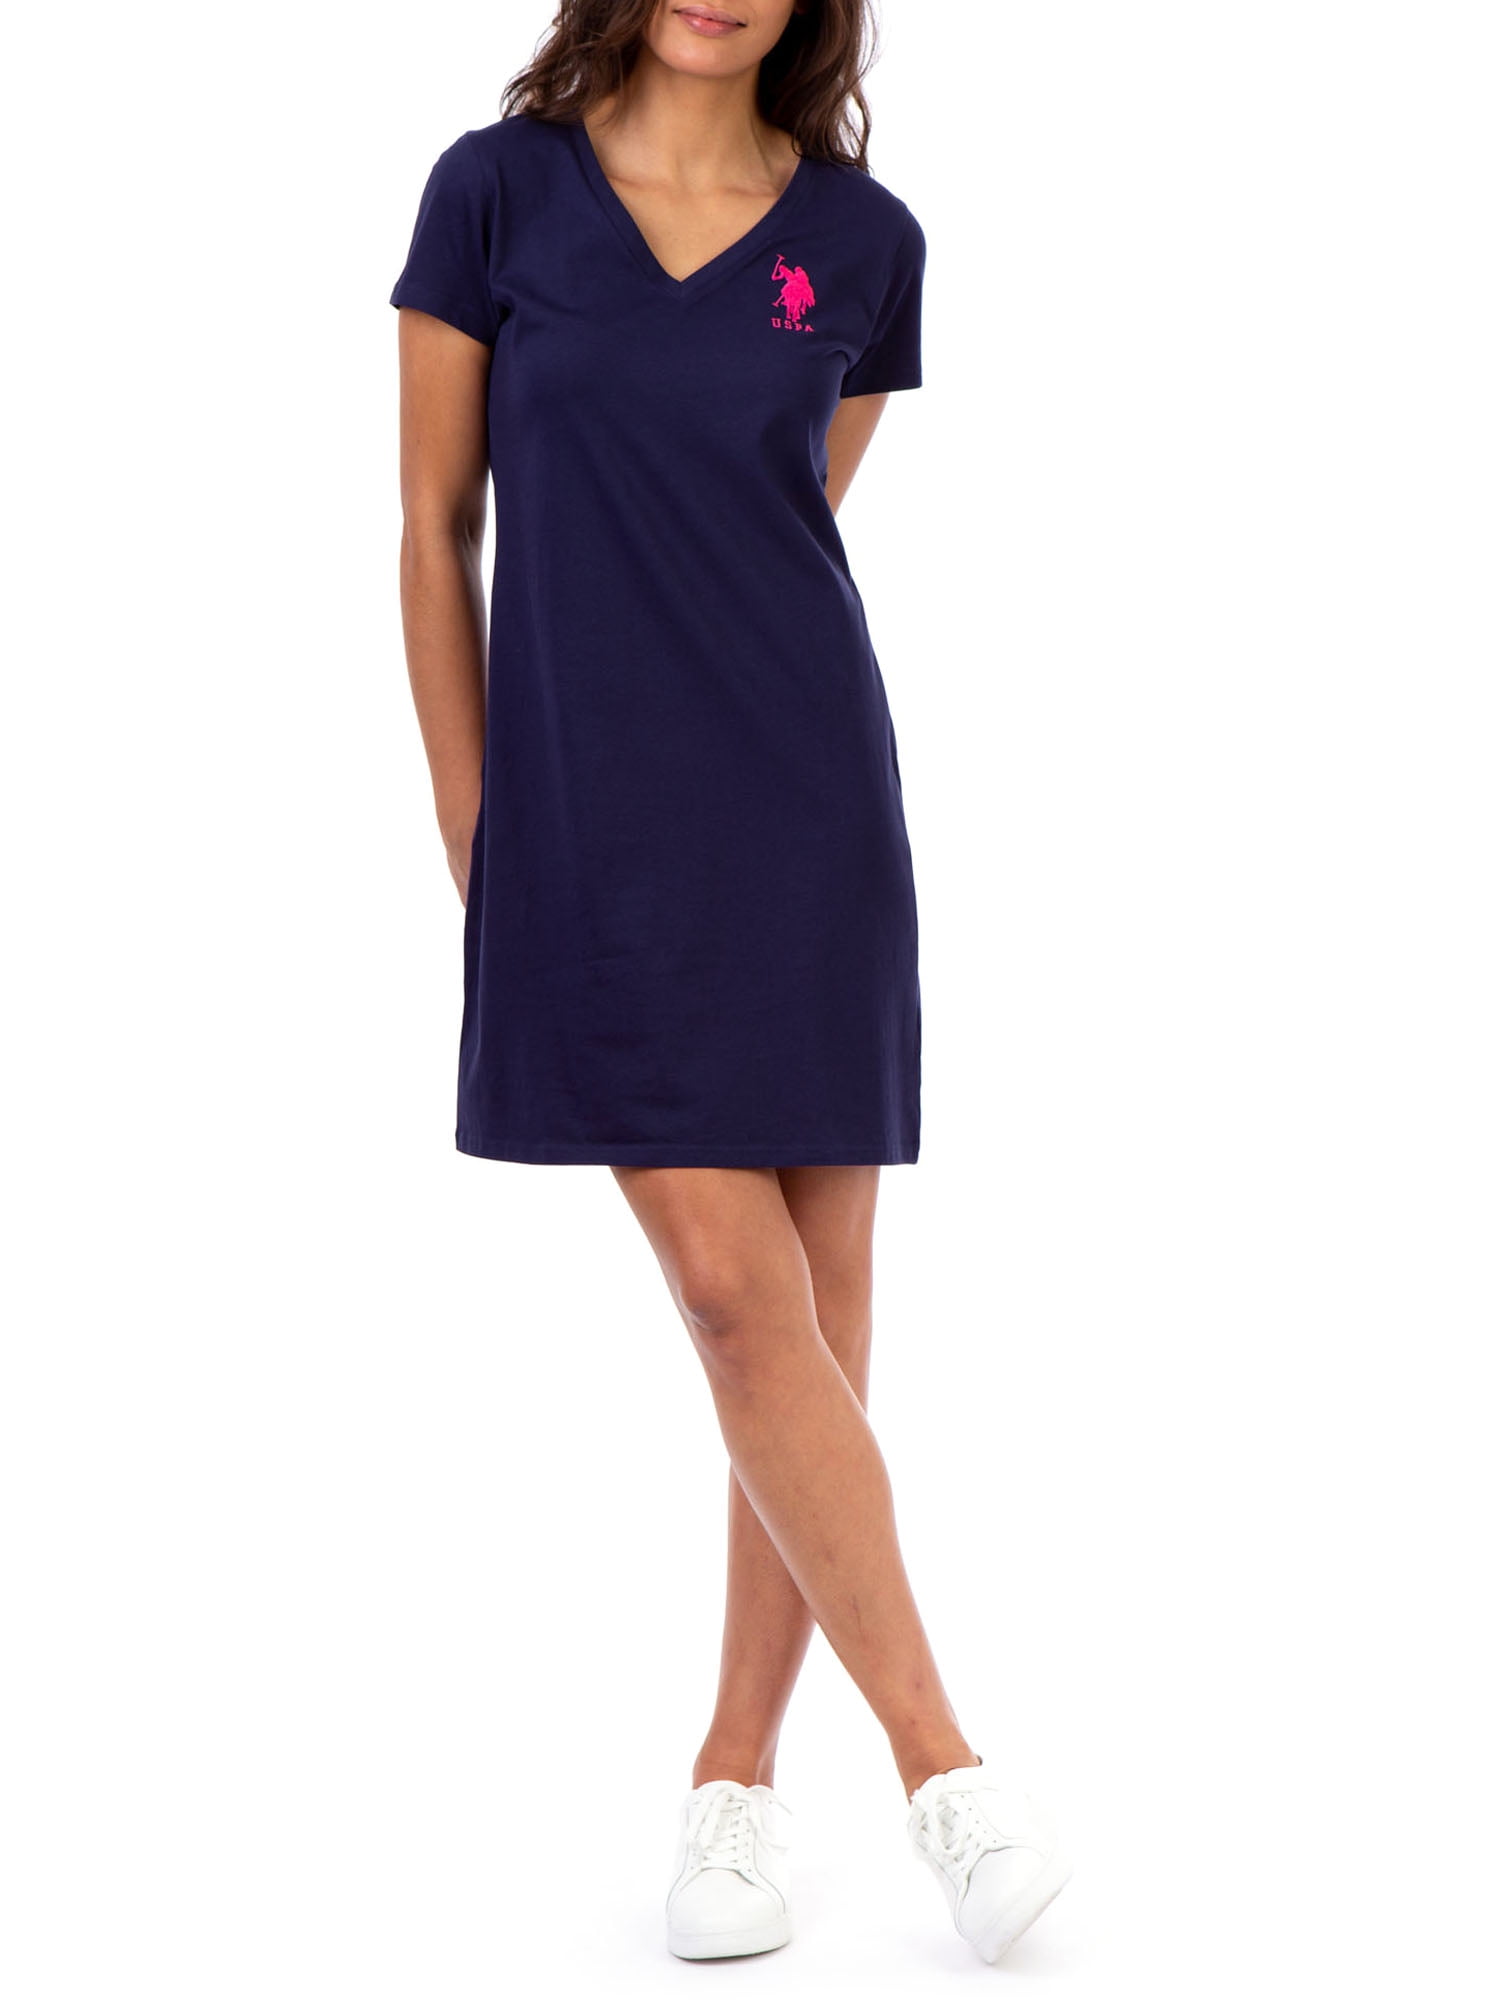 U.S. Polo Assn. Solid Vneck Dress Women's - Walmart.com